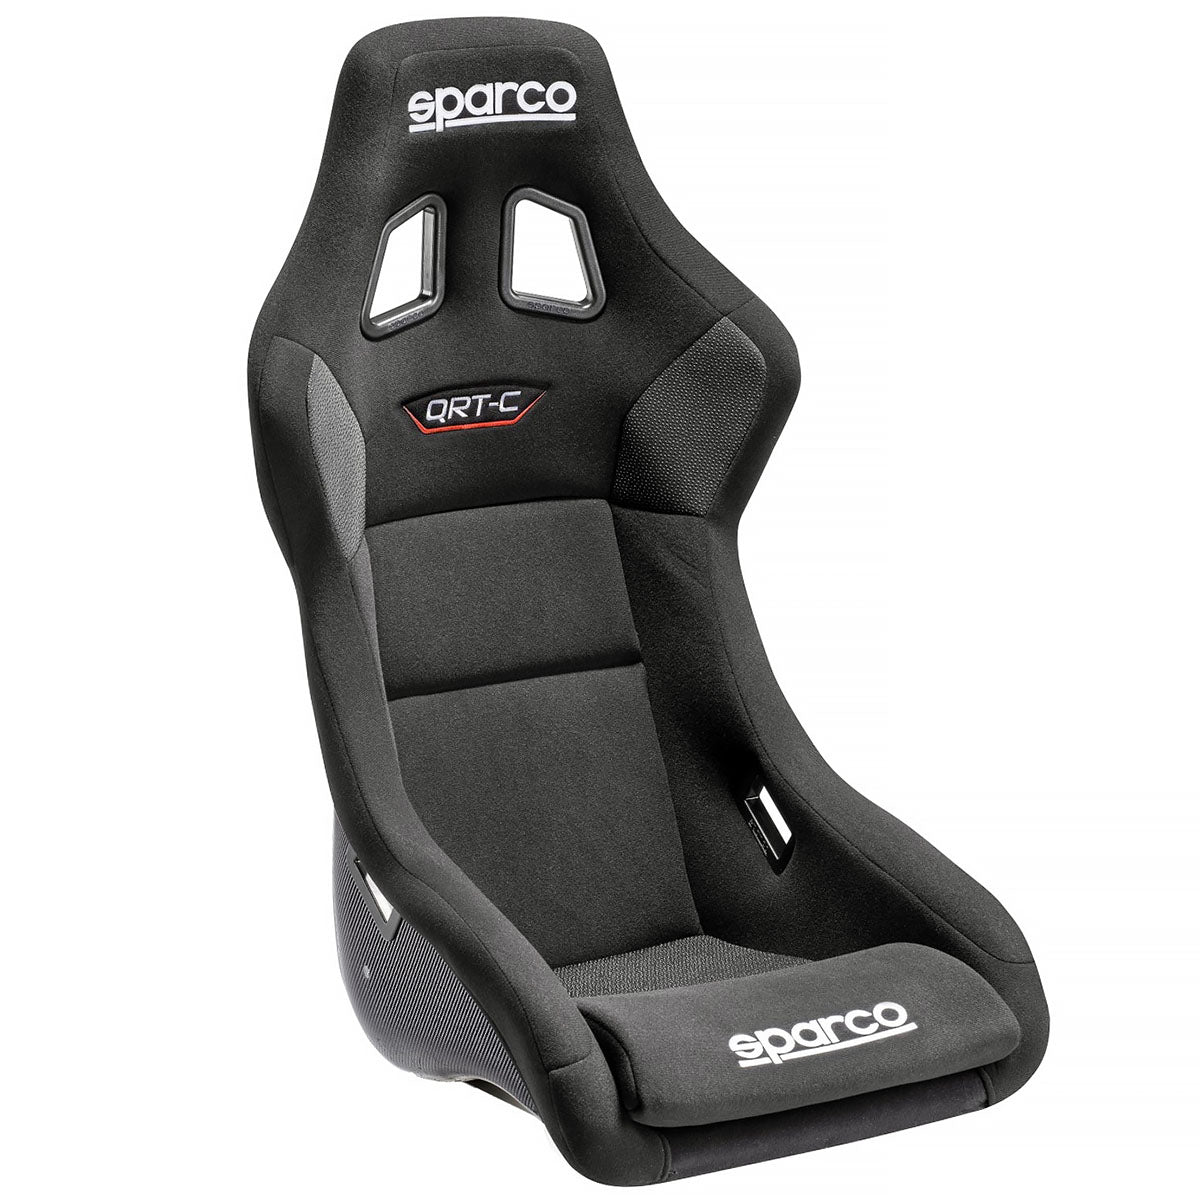 Sparco QRT-C Carbon Racing Seat